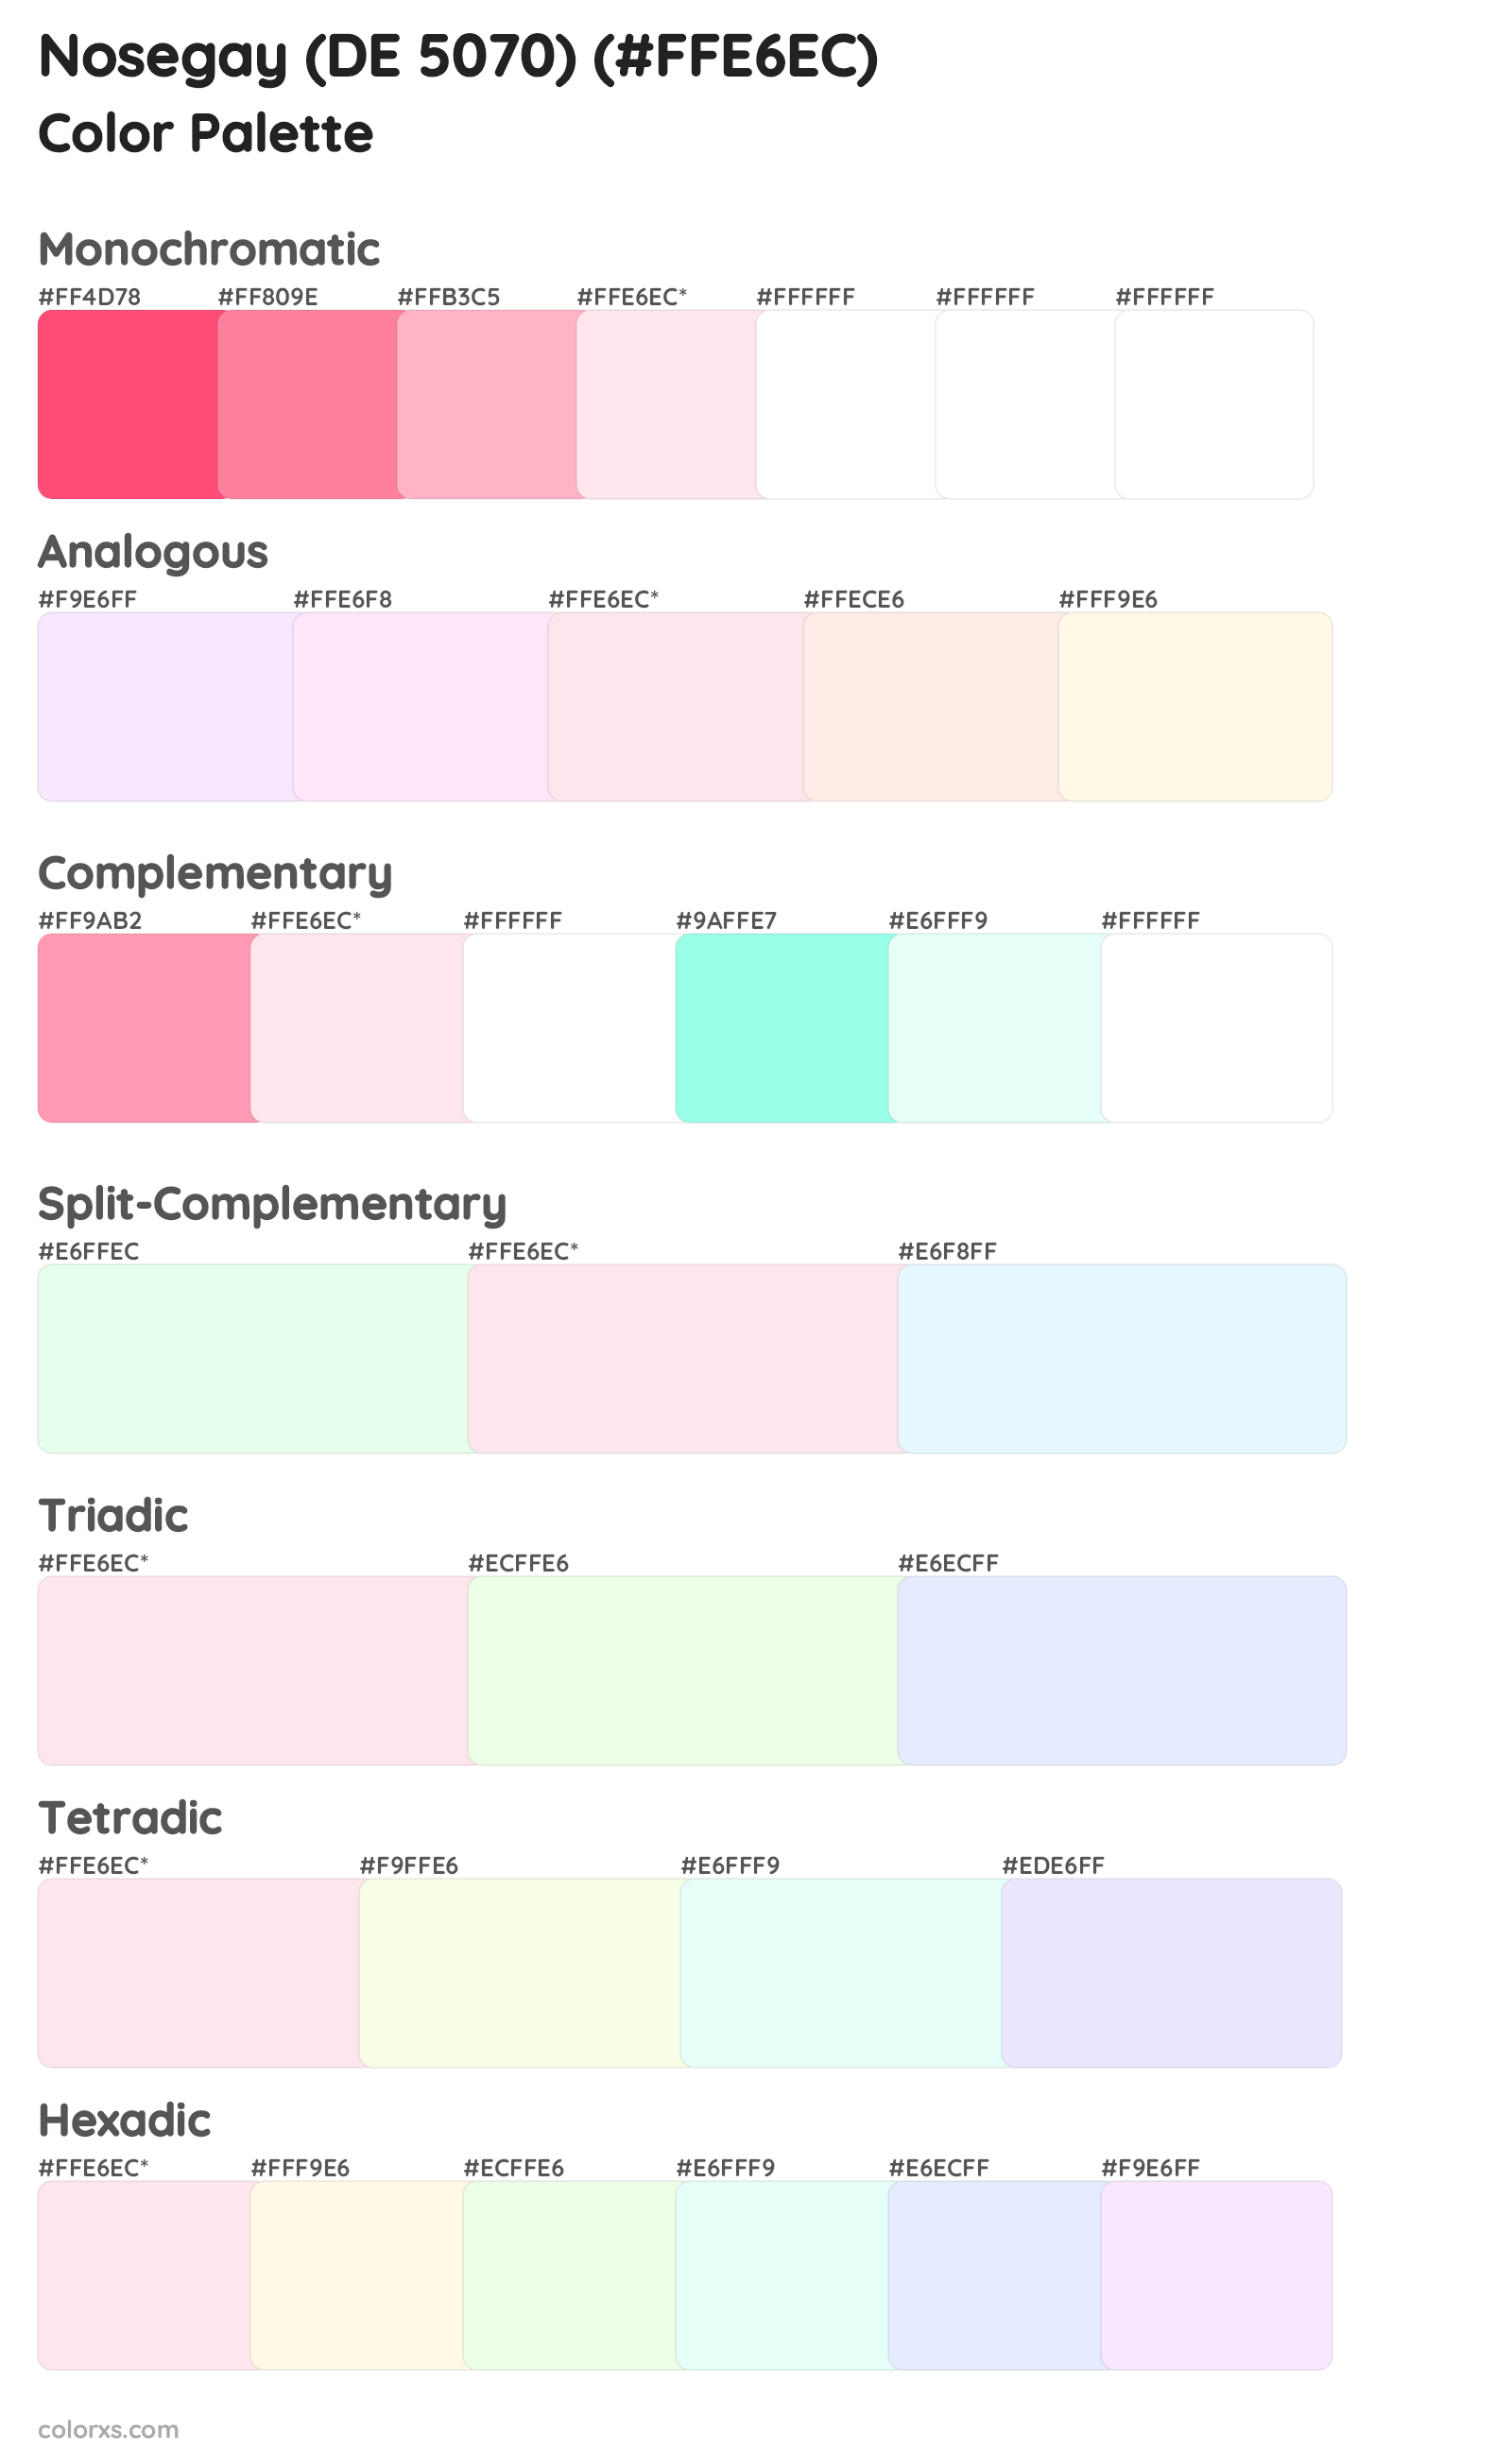 Nosegay (DE 5070) Color Scheme Palettes